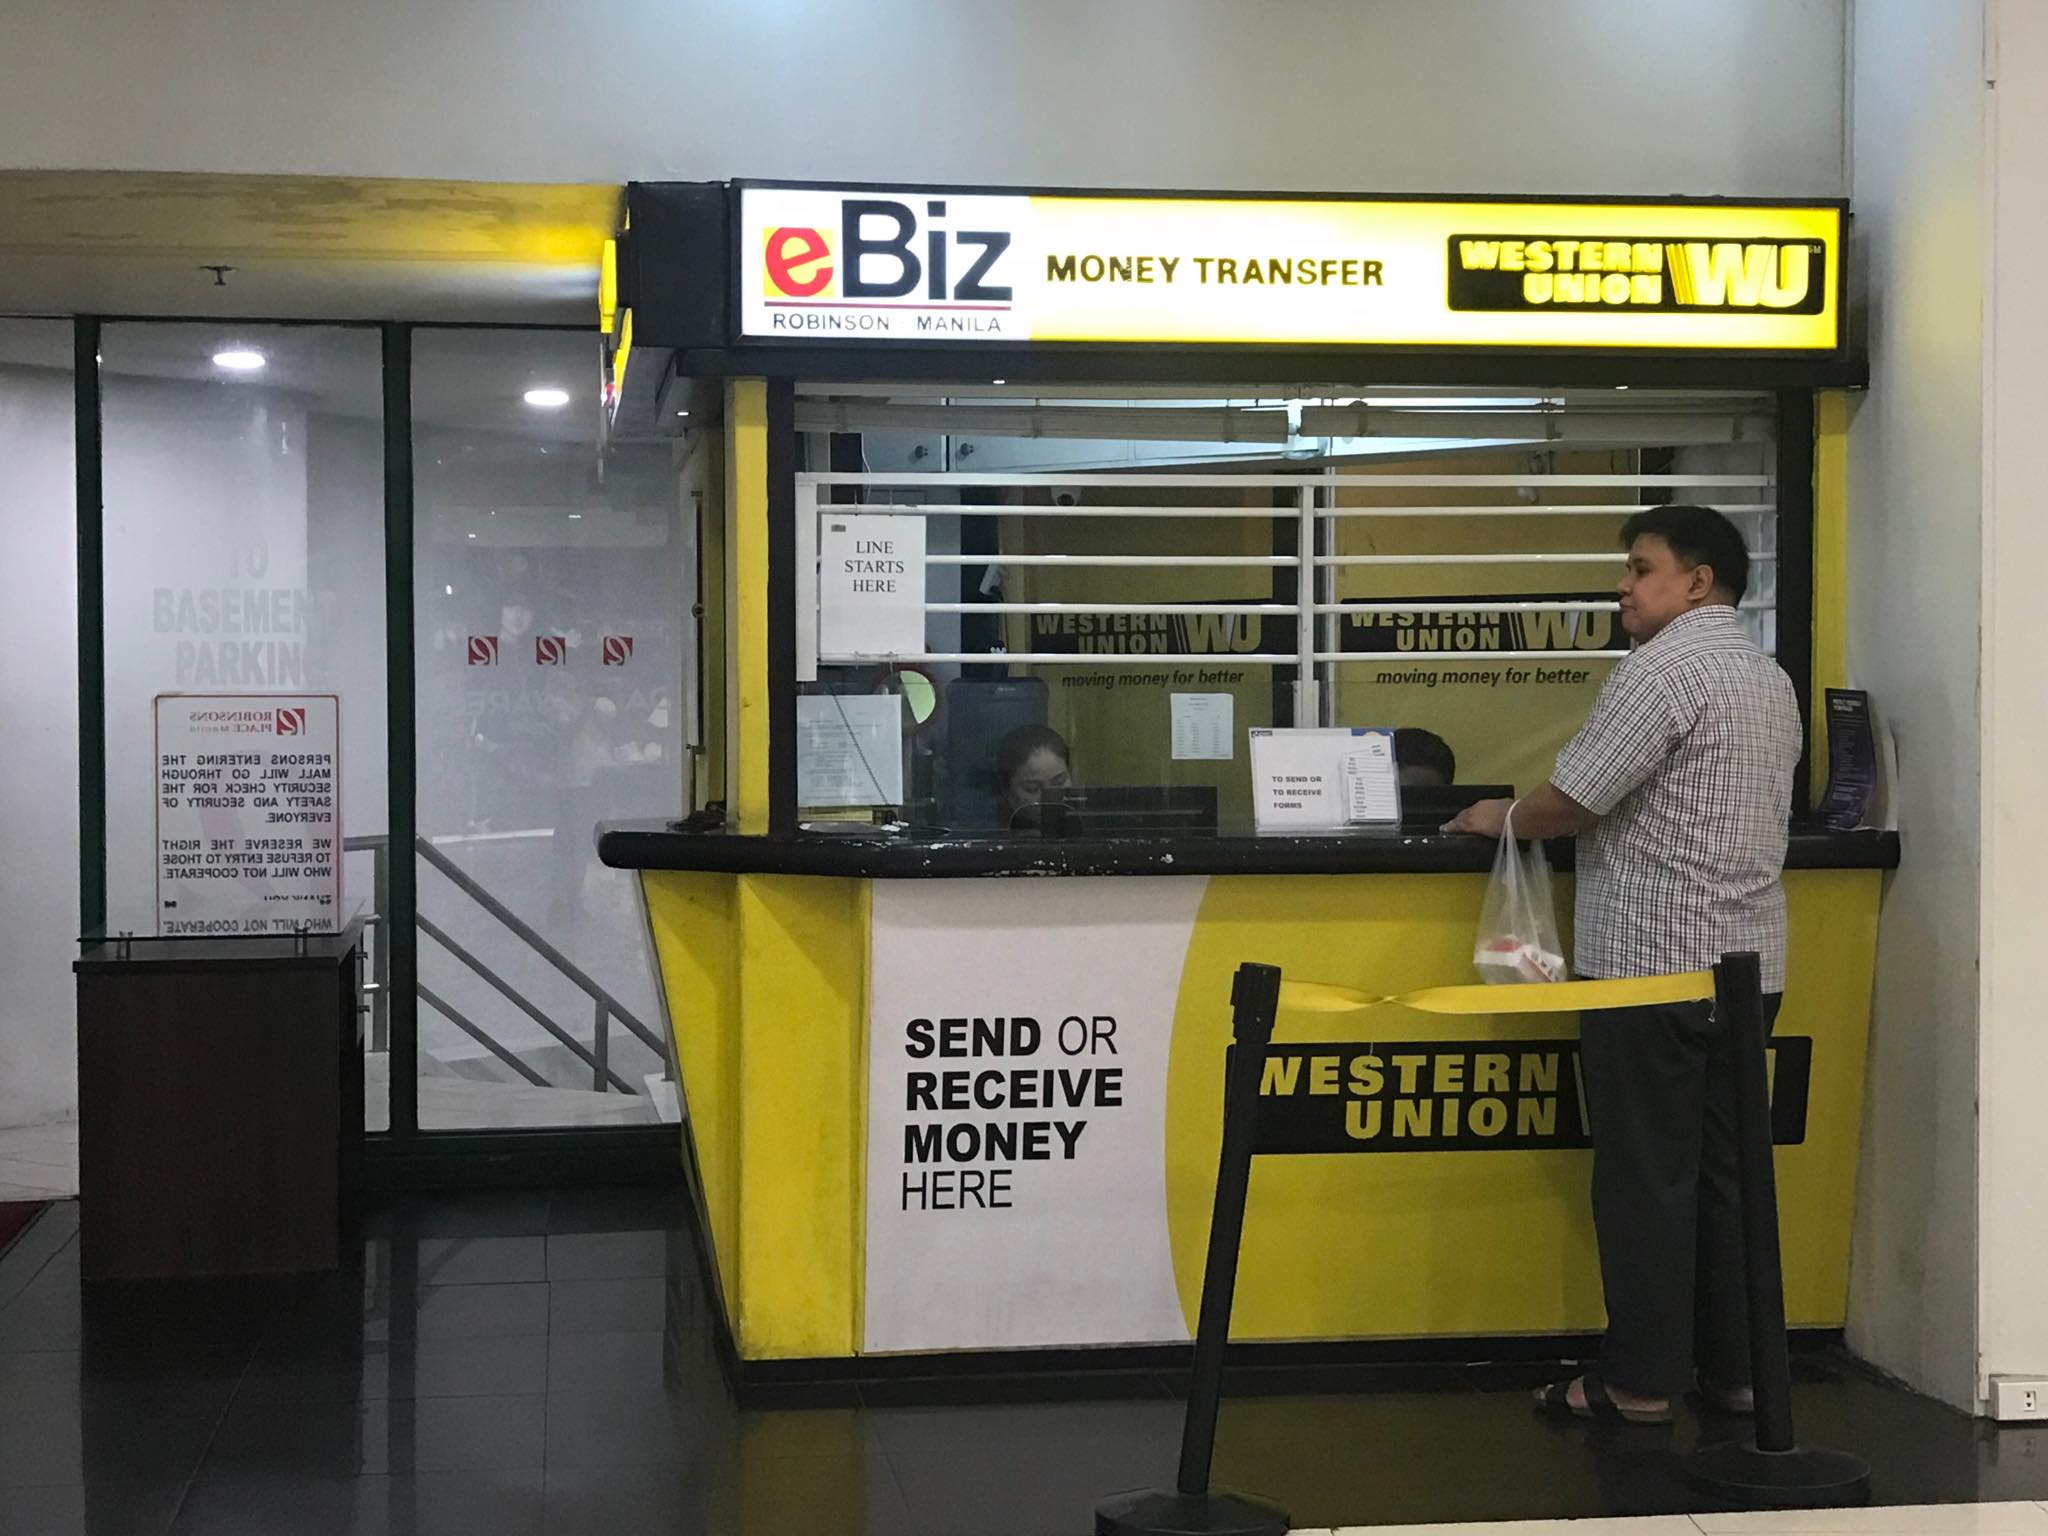 菲律賓馬尼拉如何如何換錢最划算? 披索在機場換還是市區換比較好?換錢懶人包 @東南亞投資報告